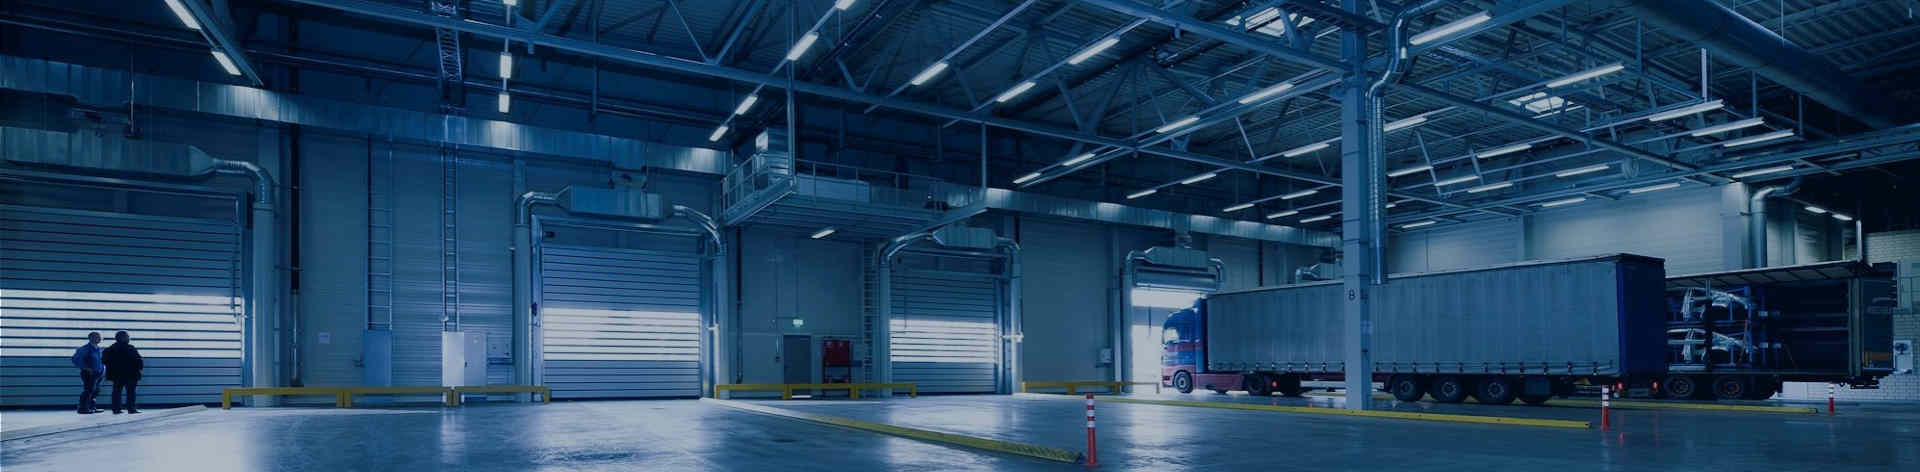 جودة إضاءة السقف سبوت LED قابلة للتعتيم الخدمات